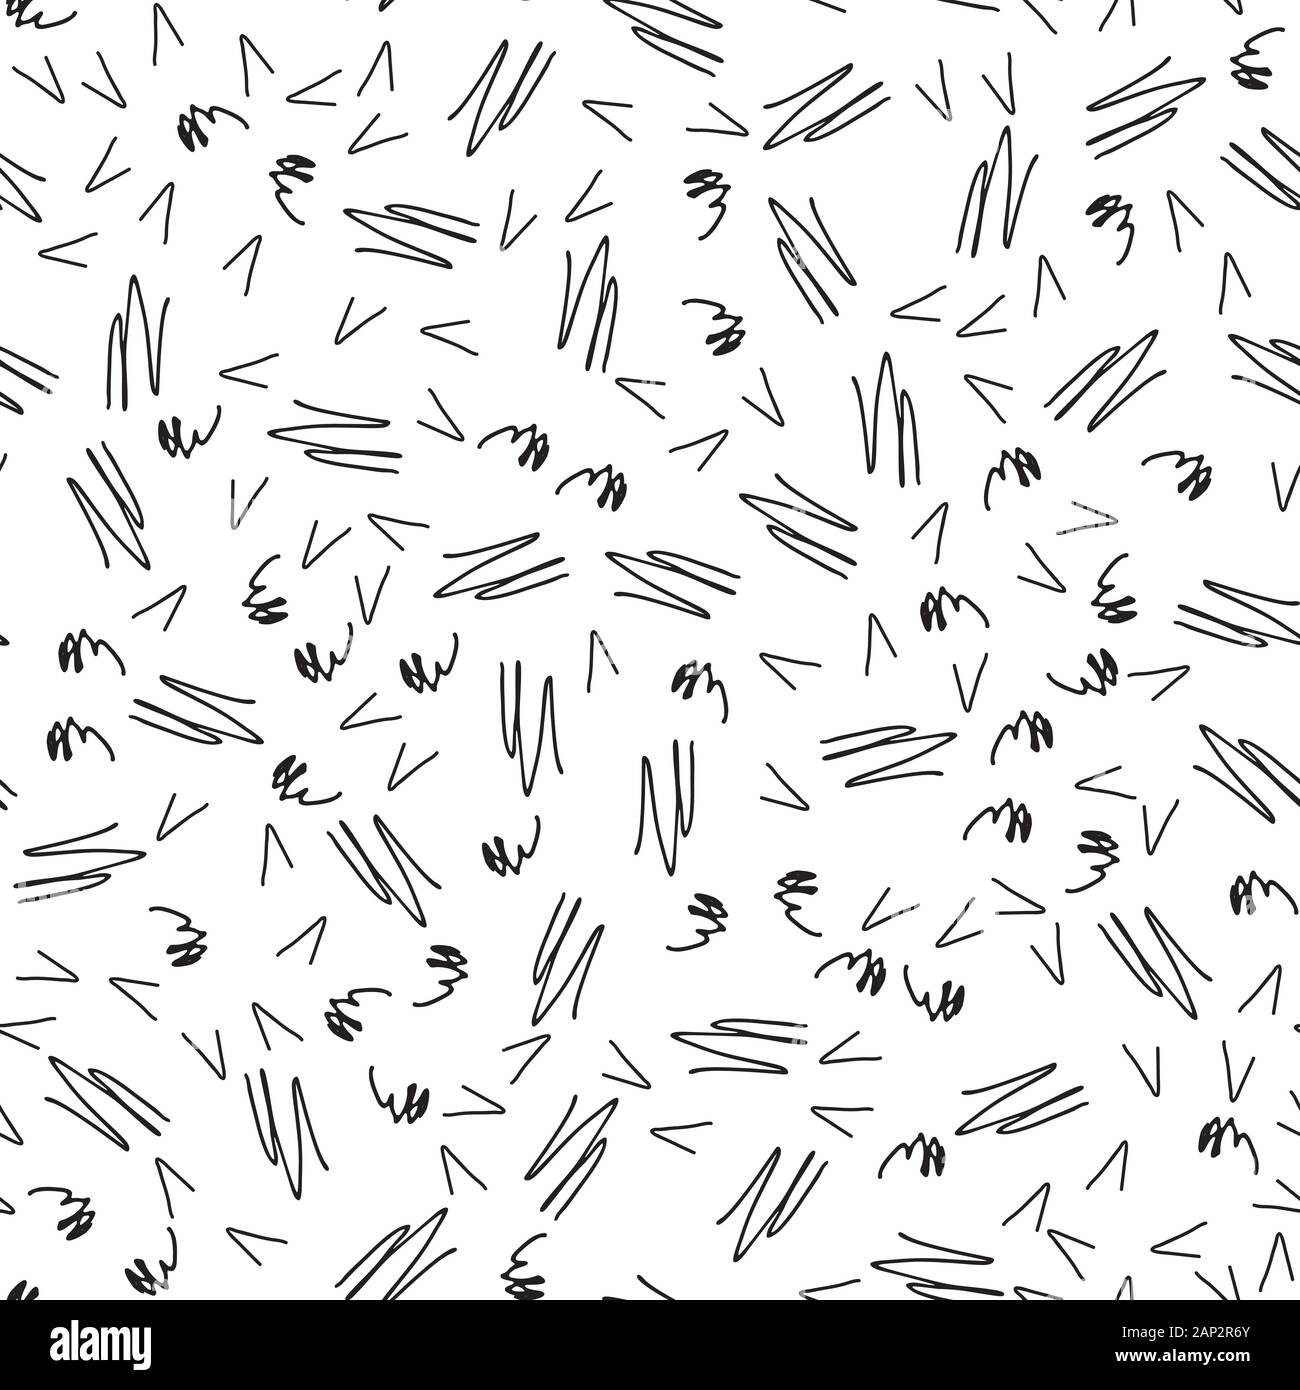 Zusammenfassung nahtlose Muster mit Gekritzel auf weißen Hintergrund. Einfache abstrakte Muster Hintergrund für interrior, Textildesign, Papier Handwerk. Hand gezeichnet Stock Vektor